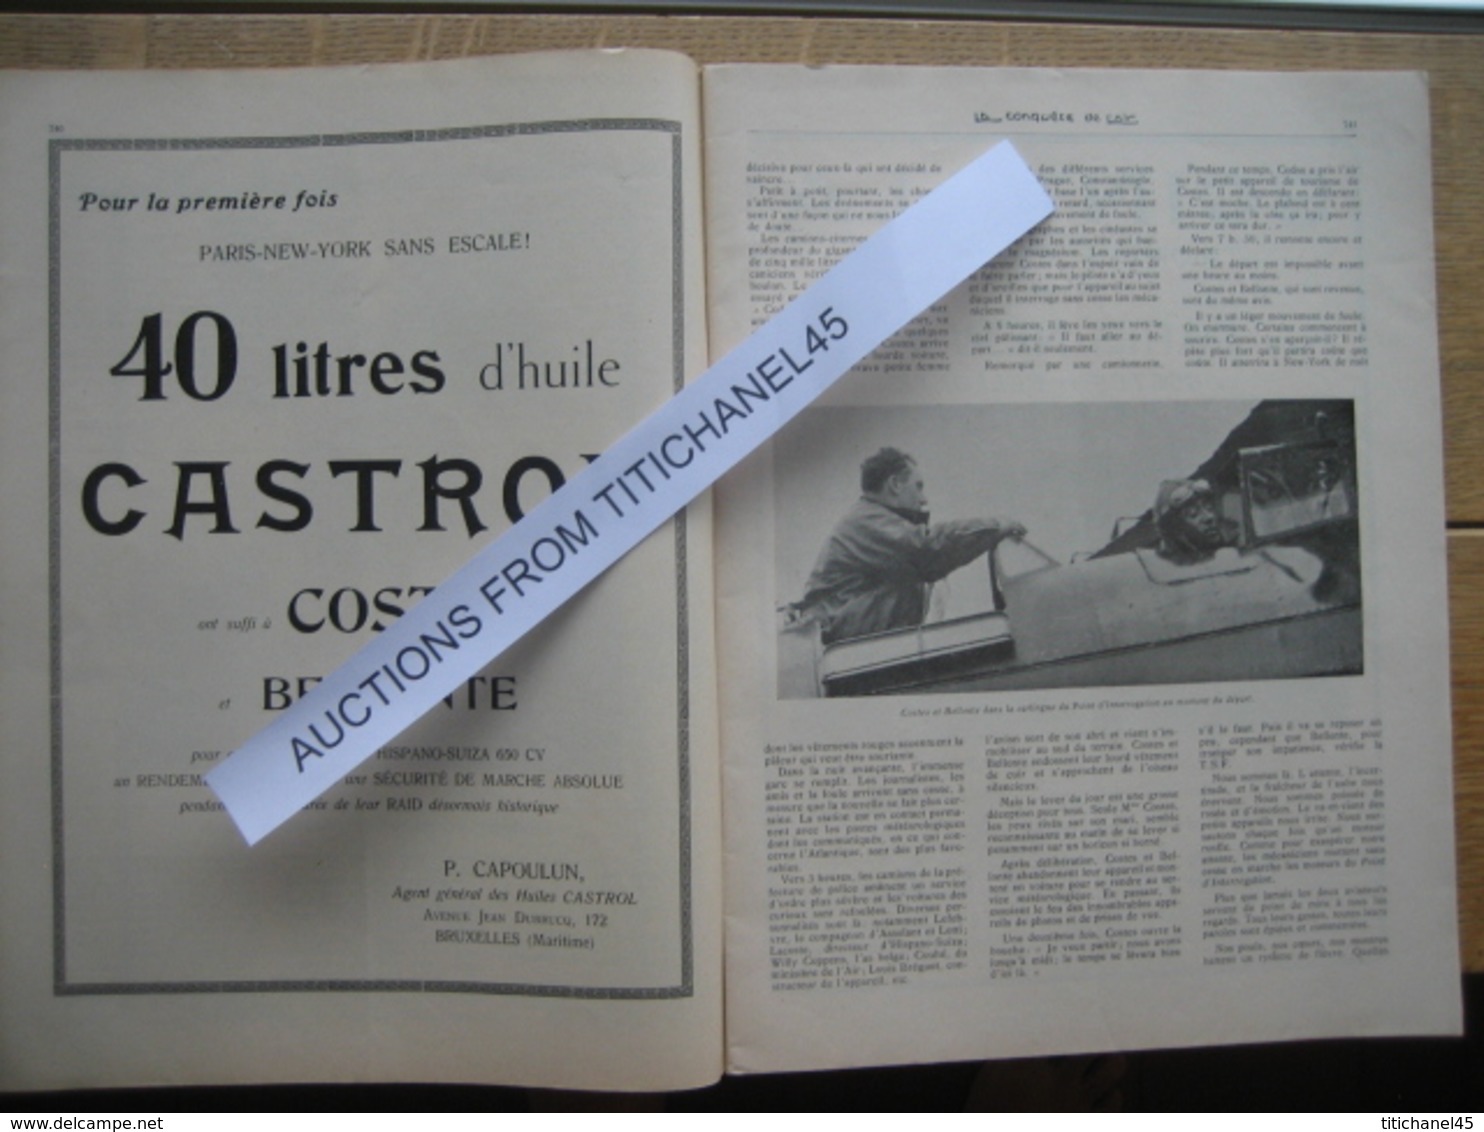 LA CONQUETE DE l'AIR 1930 n°10-COSTES & BELLONTE PARIS-NEW-YORK-Pub. PHILIPS-DORNIER D 1422-Personnel SABENA au CONGO